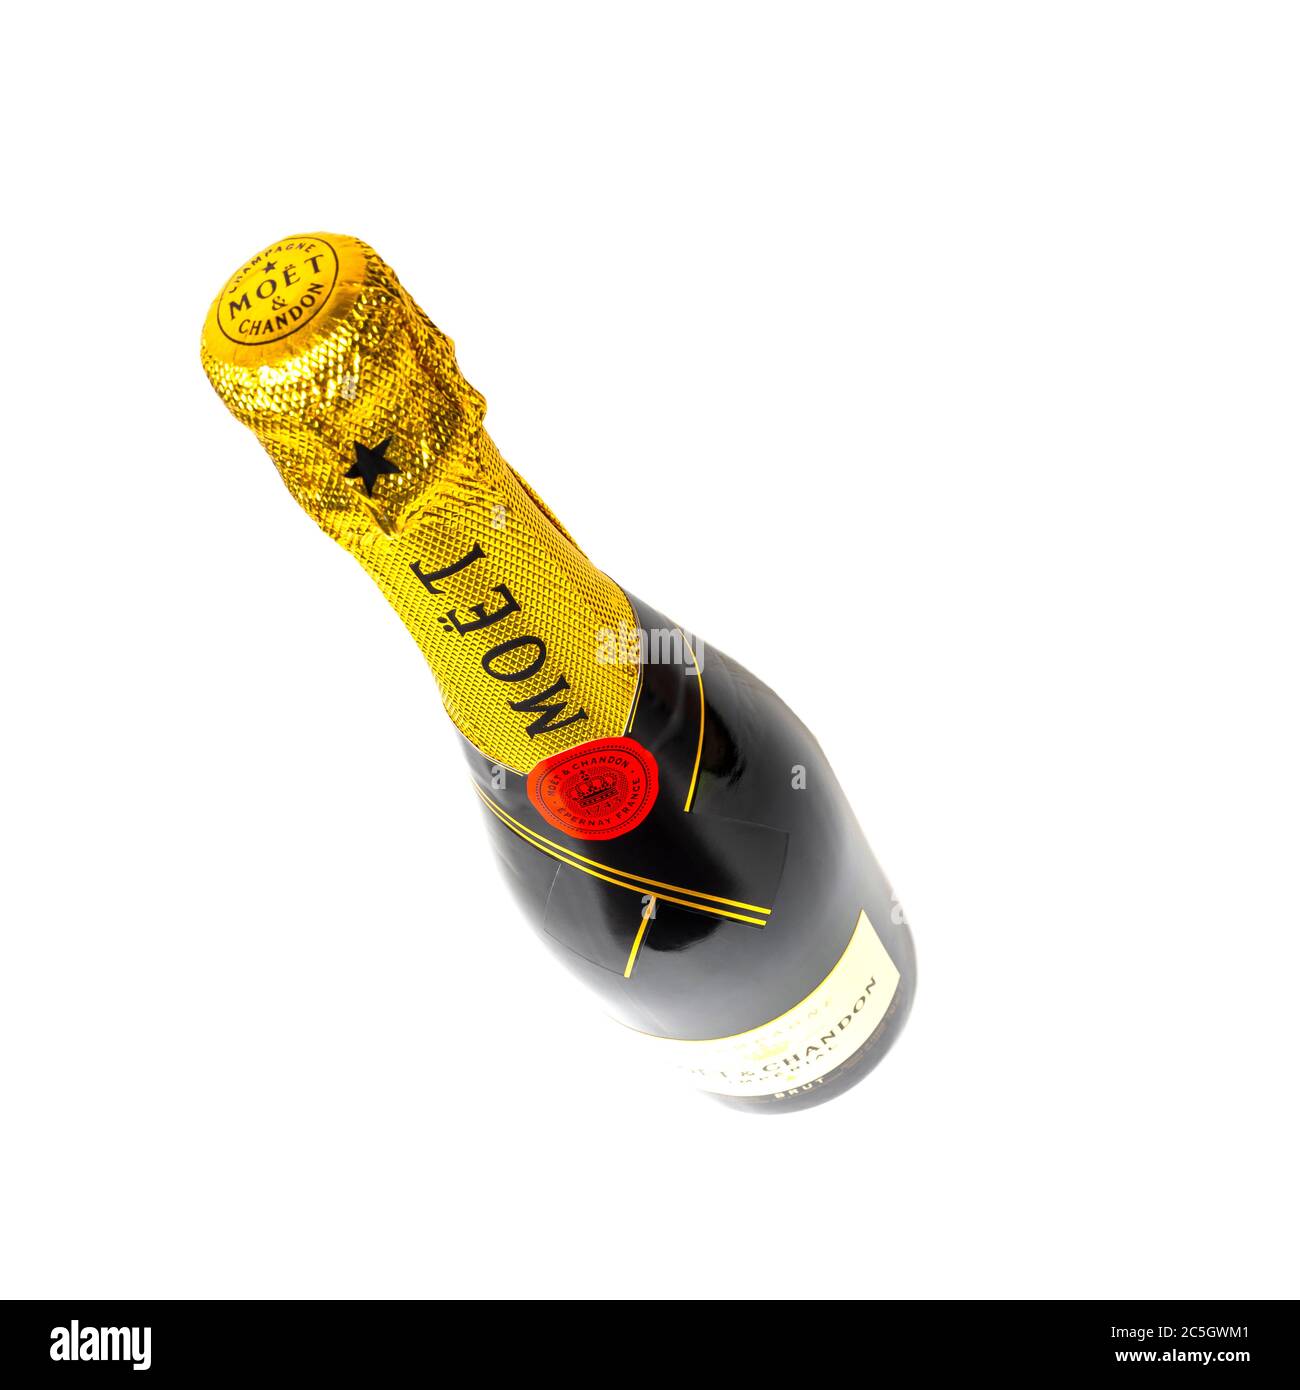 Sankt-Petersburg, Russie - 30 décembre 2019 : bouteille de champagne Moët & Chandon. Studio tourné en blanc Banque D'Images